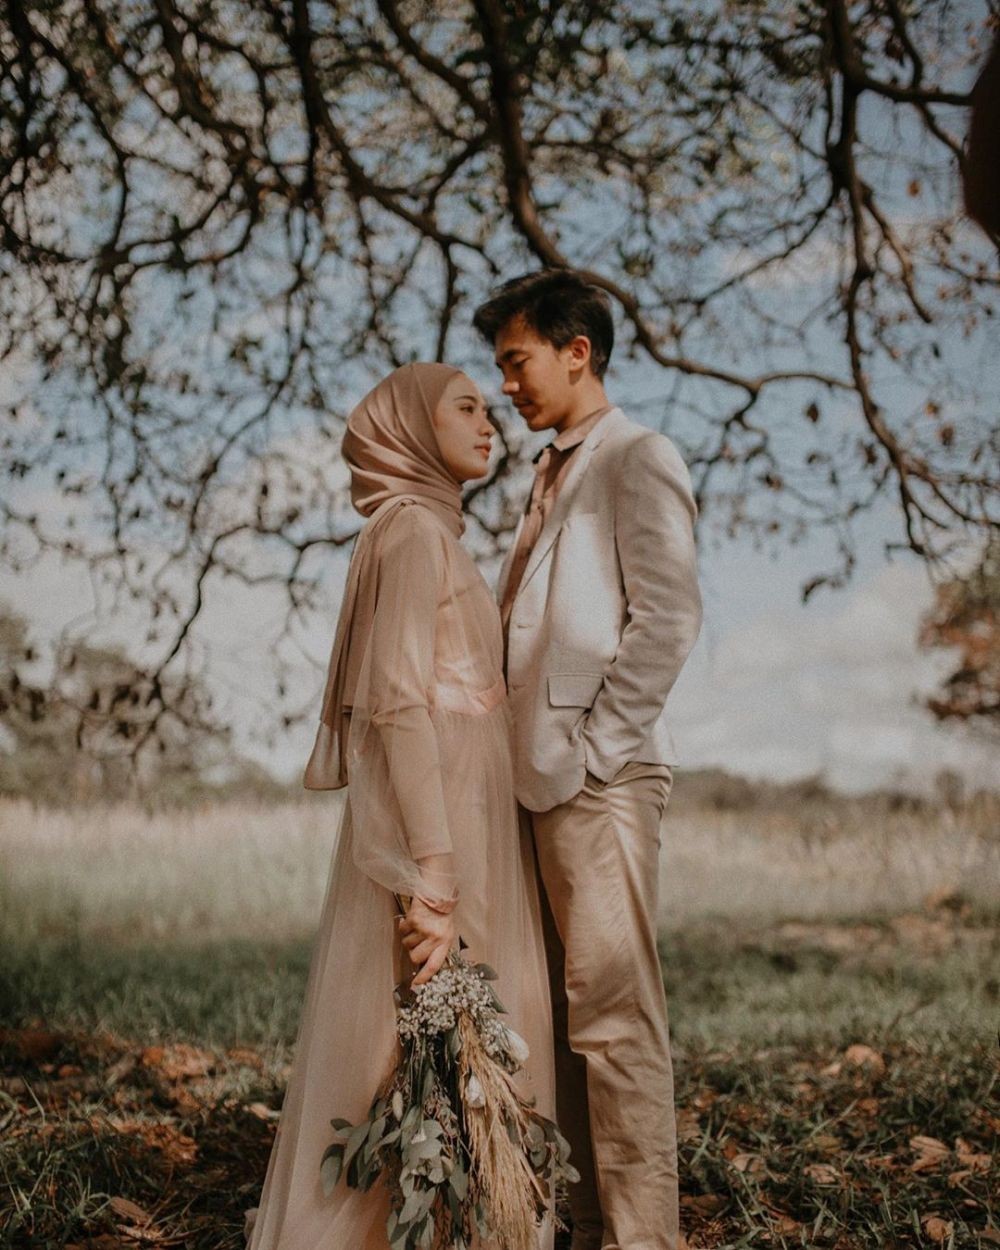 Cantik Foto Prewedding Hijab Casual Outdoor | Gallery Pre Wedding